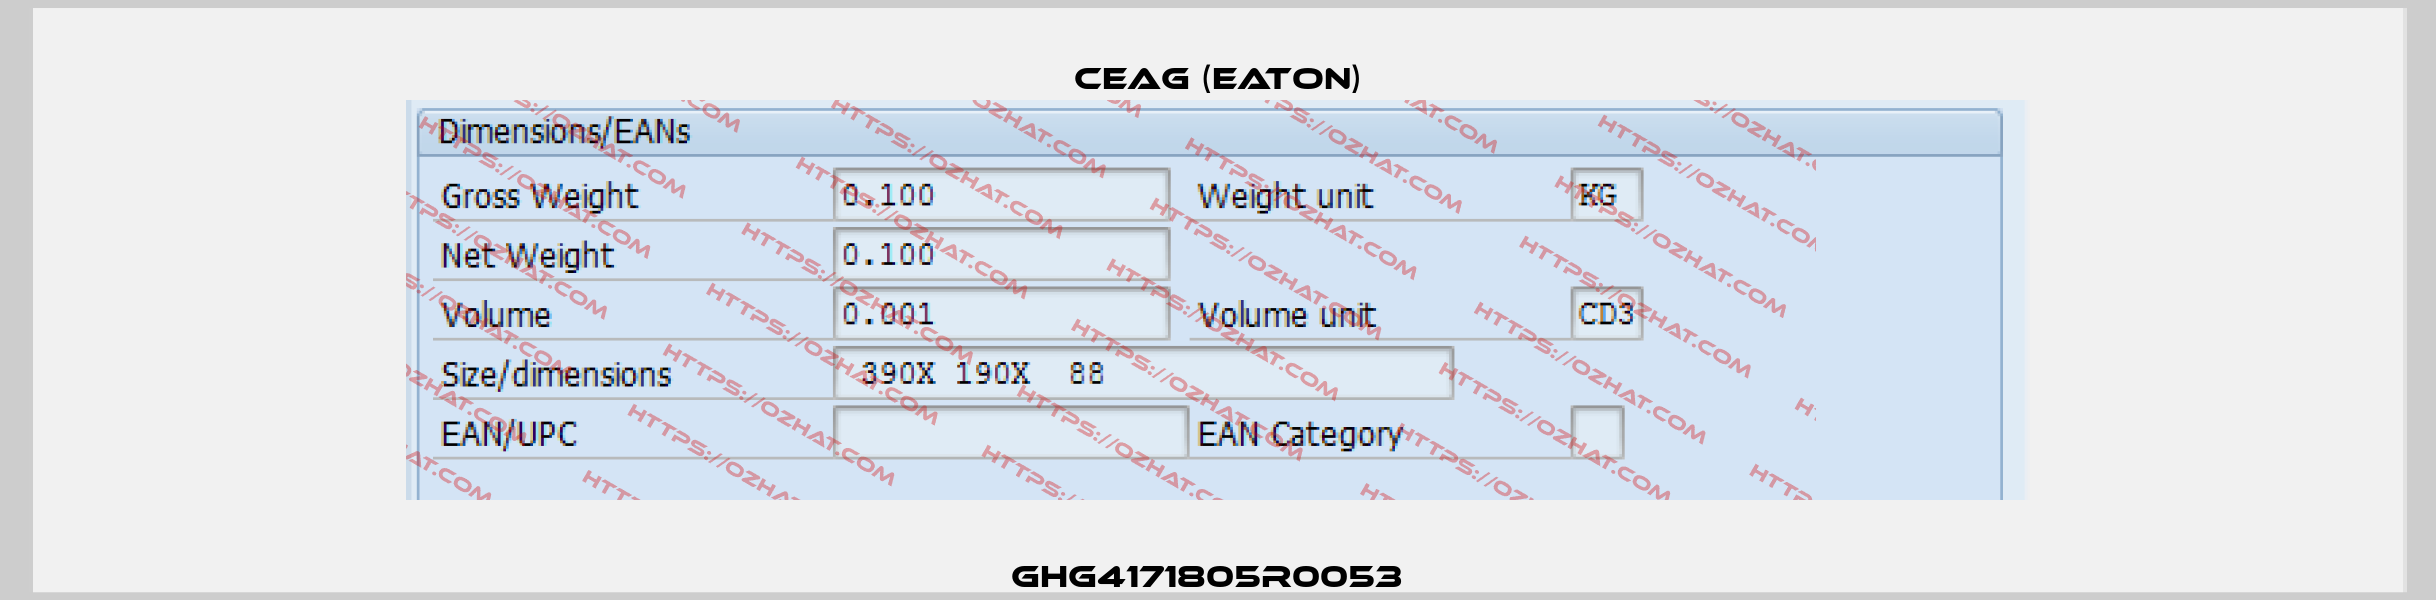 GHG4171805R0053   Ceag (Eaton)